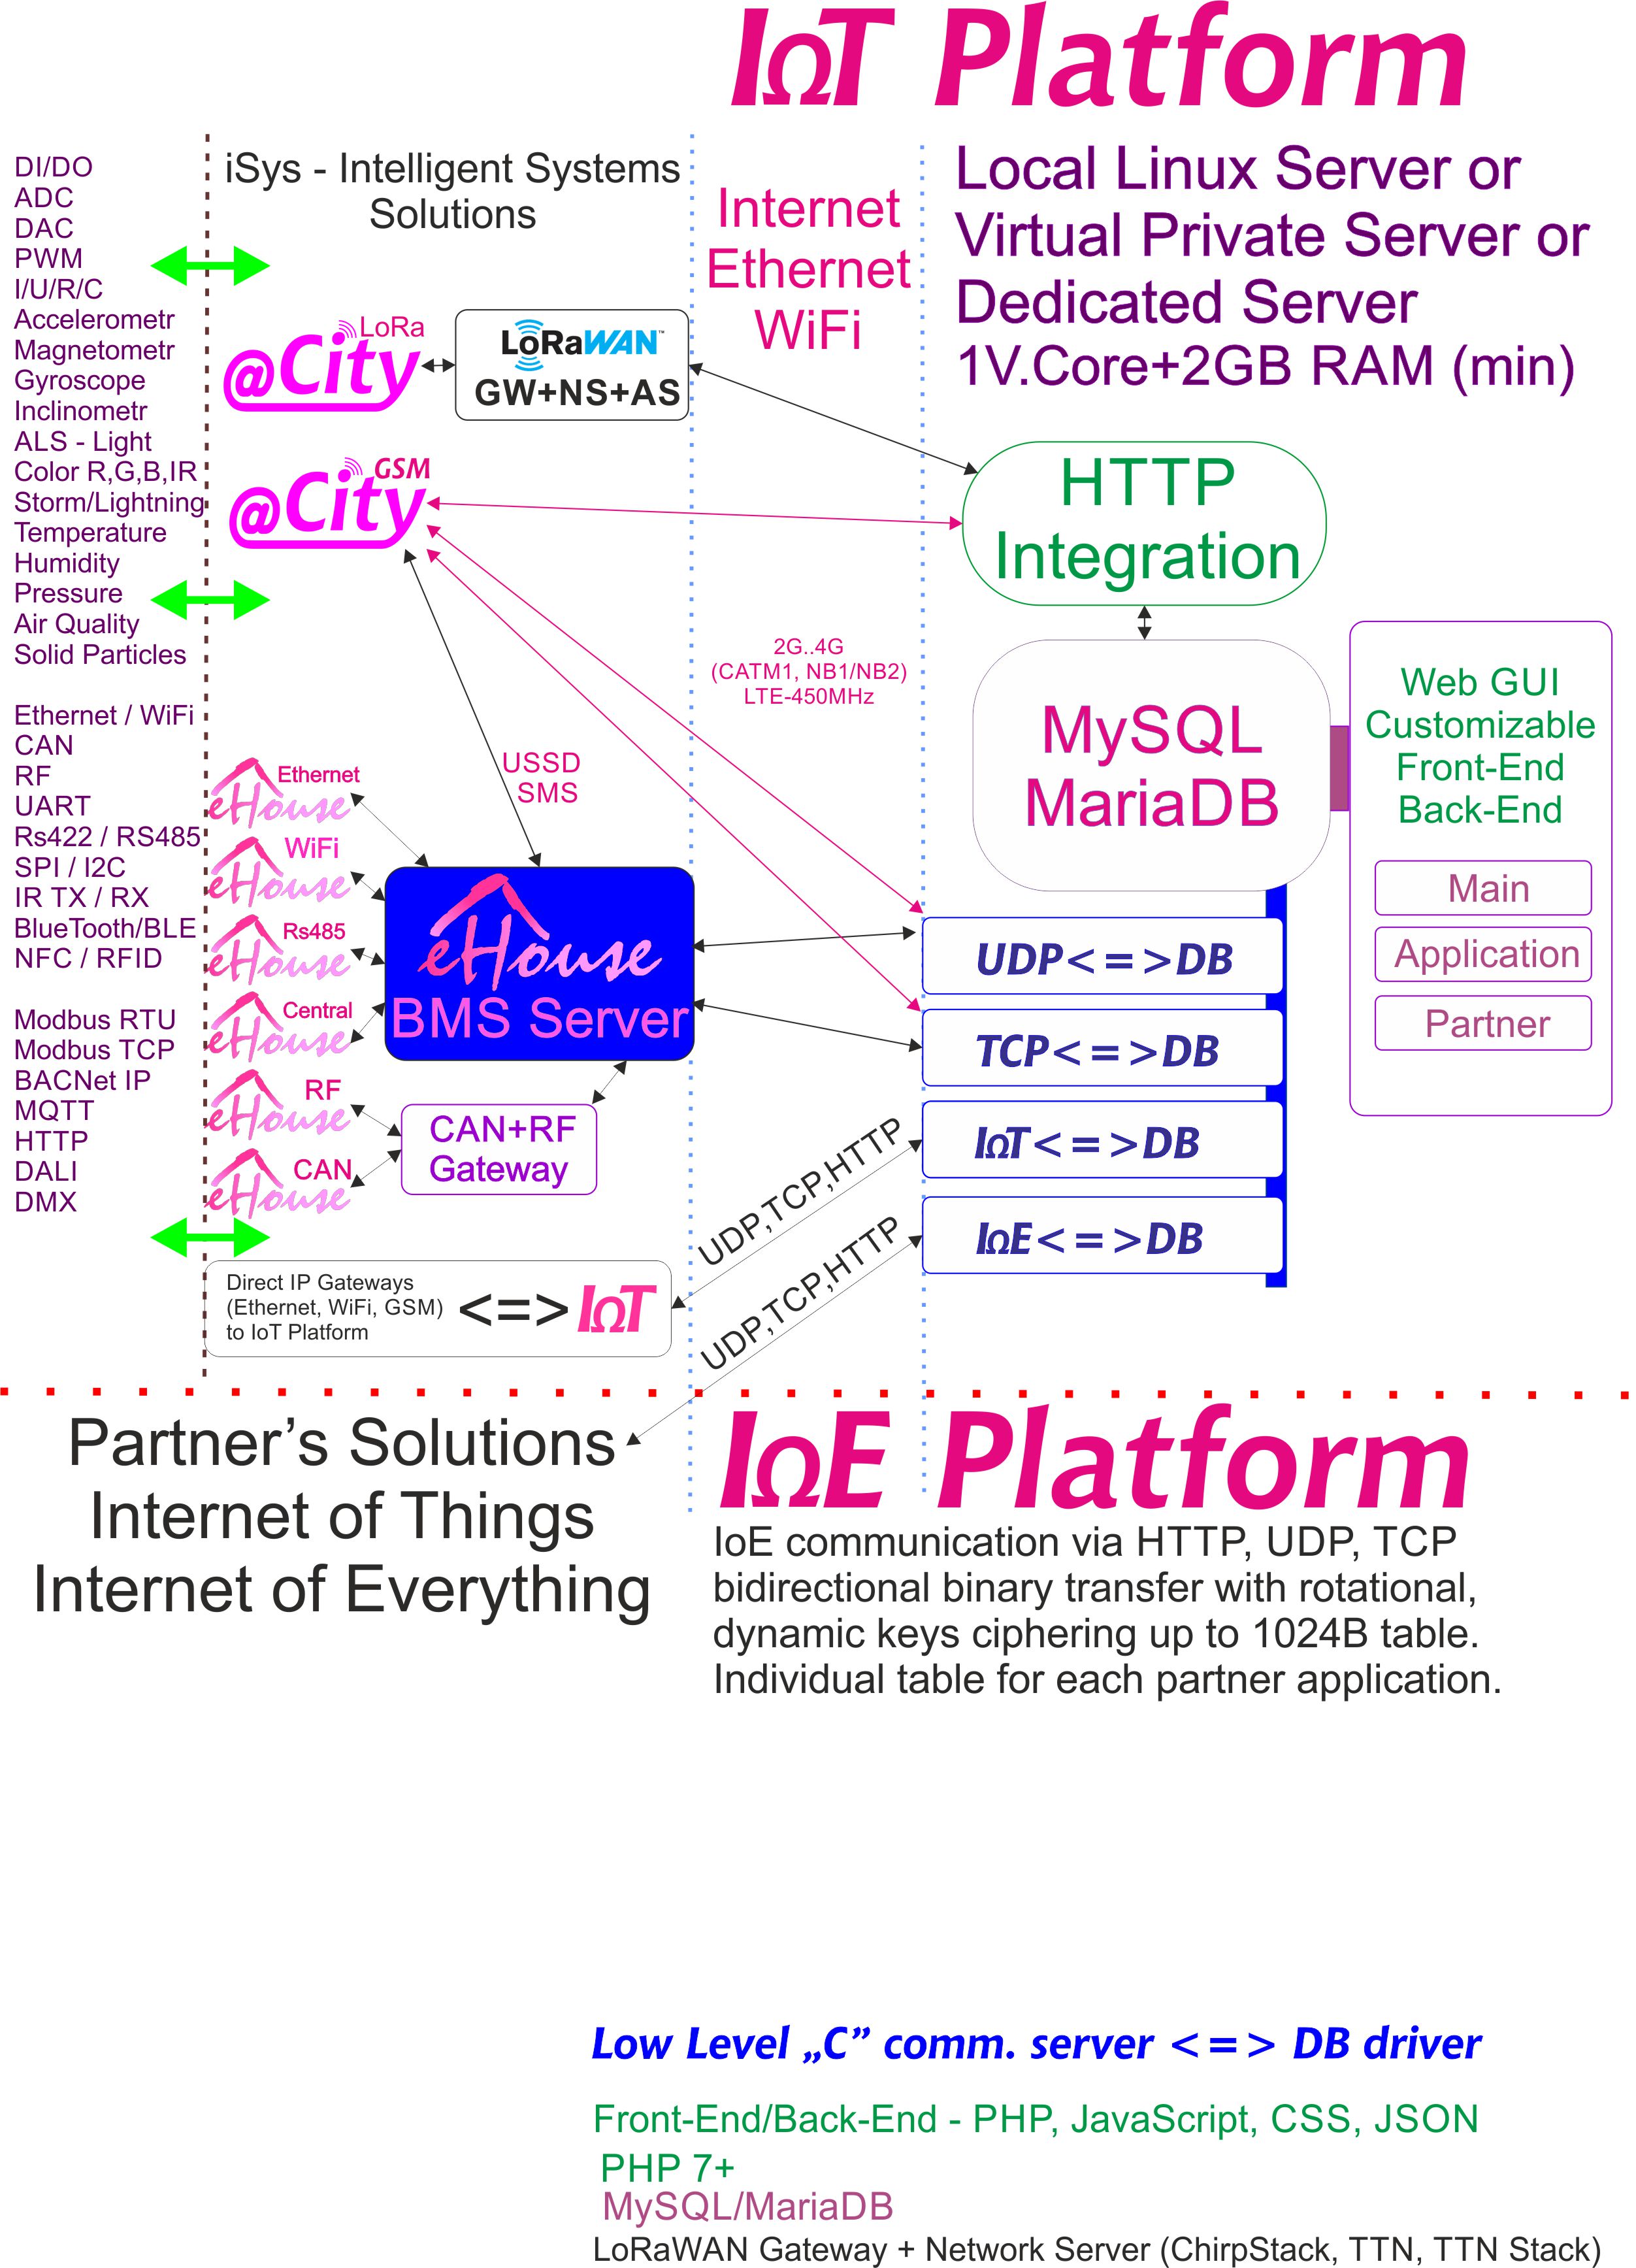 IoE, IoT Platform, joka on omistettu jokaiselle kumppanille, jolla on yksilöllinen salaus